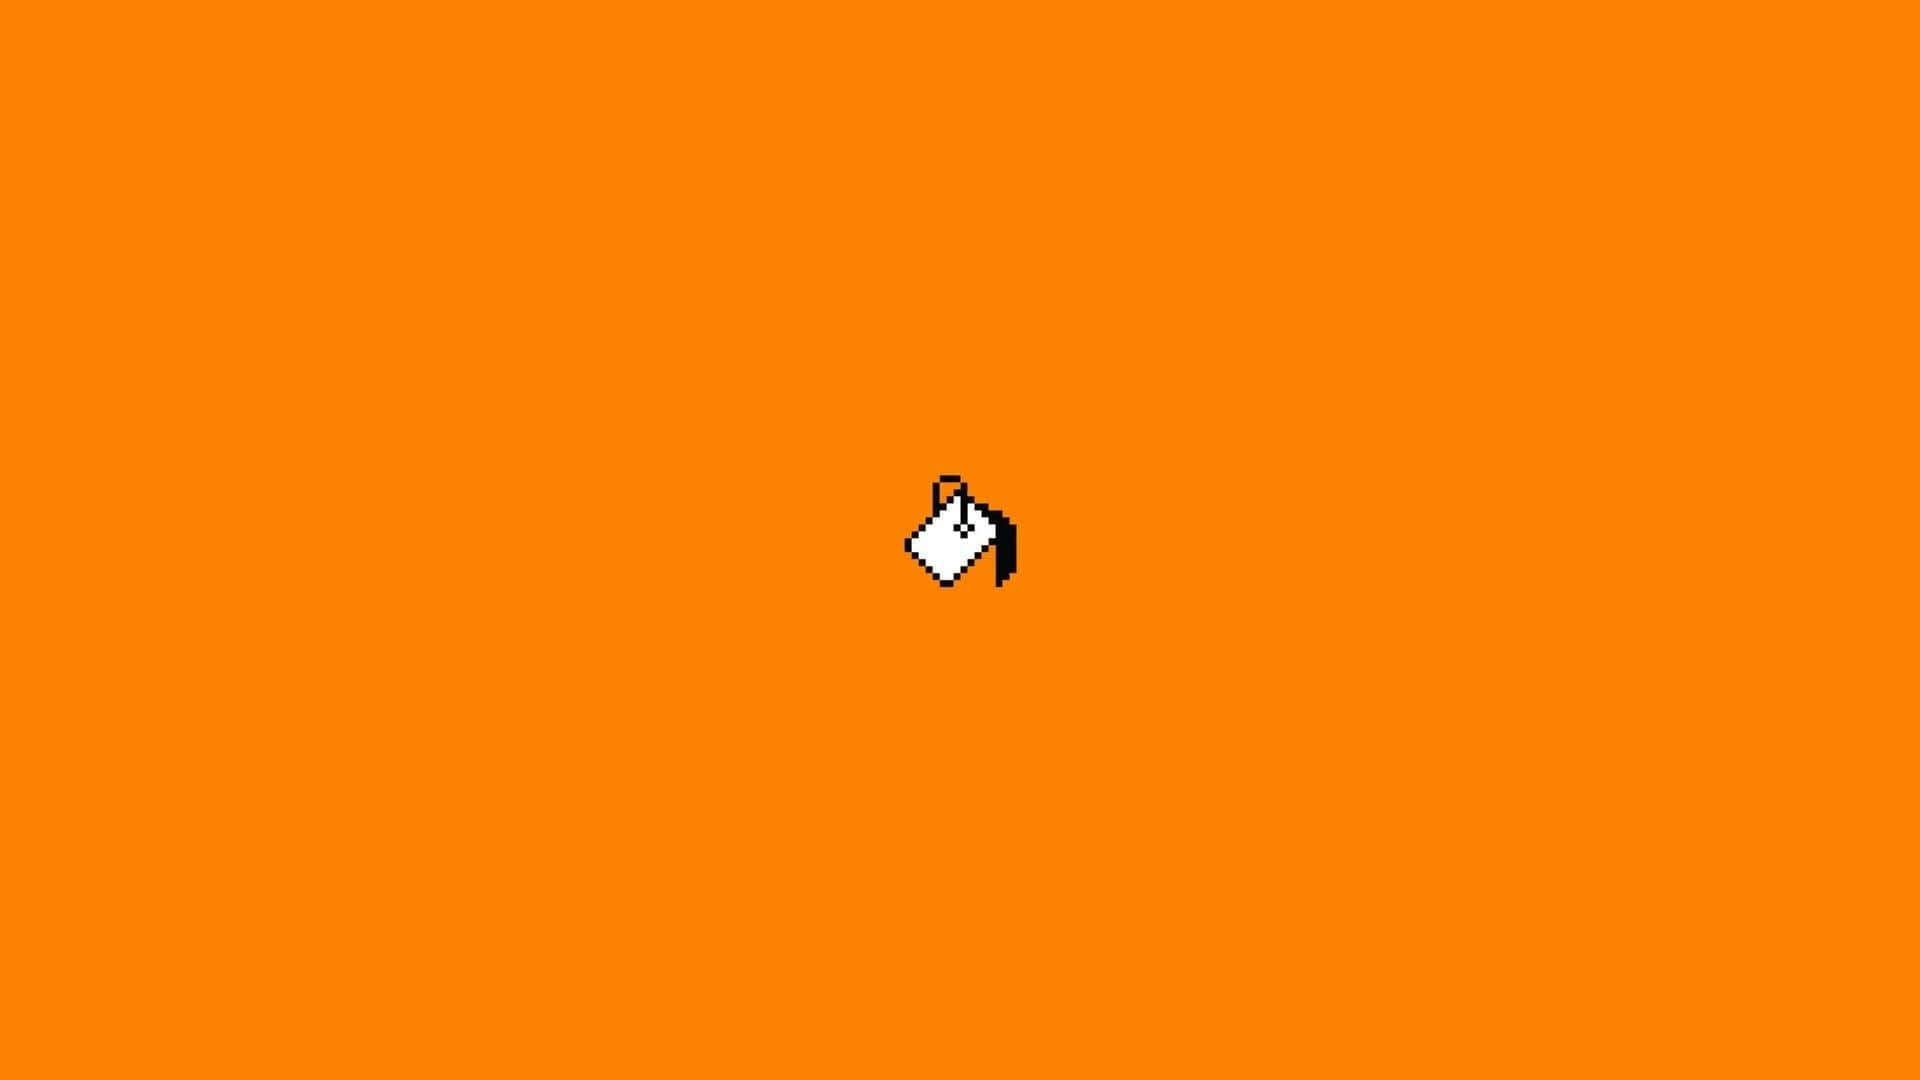 Ensort-hvidt Logo På En Orange Baggrund.